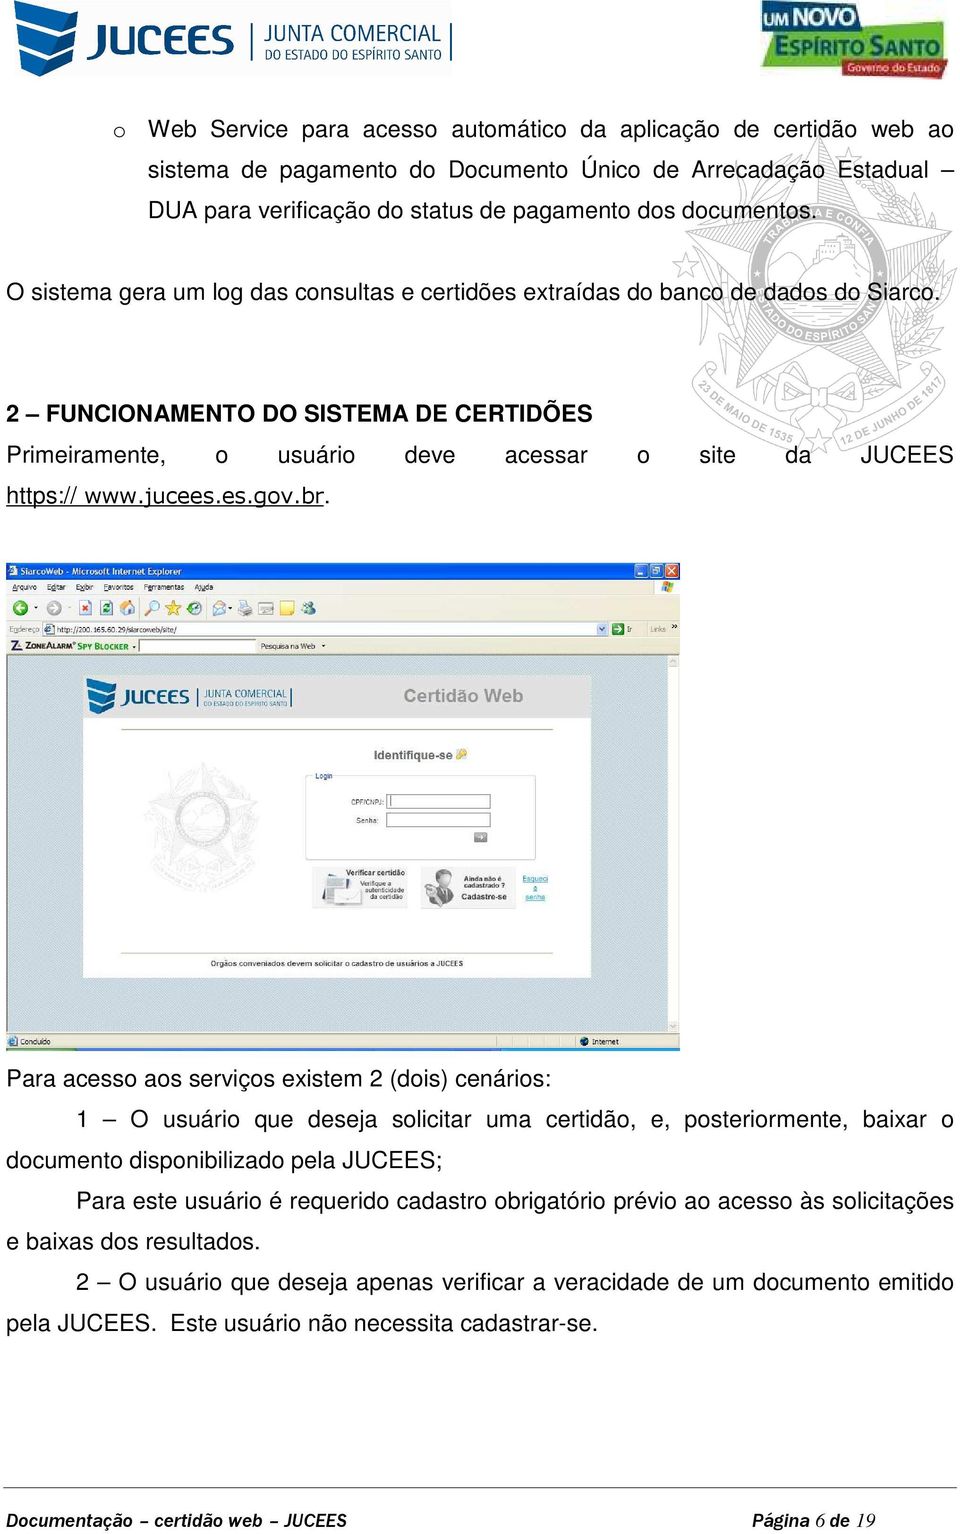 jucees.es.gov.br.